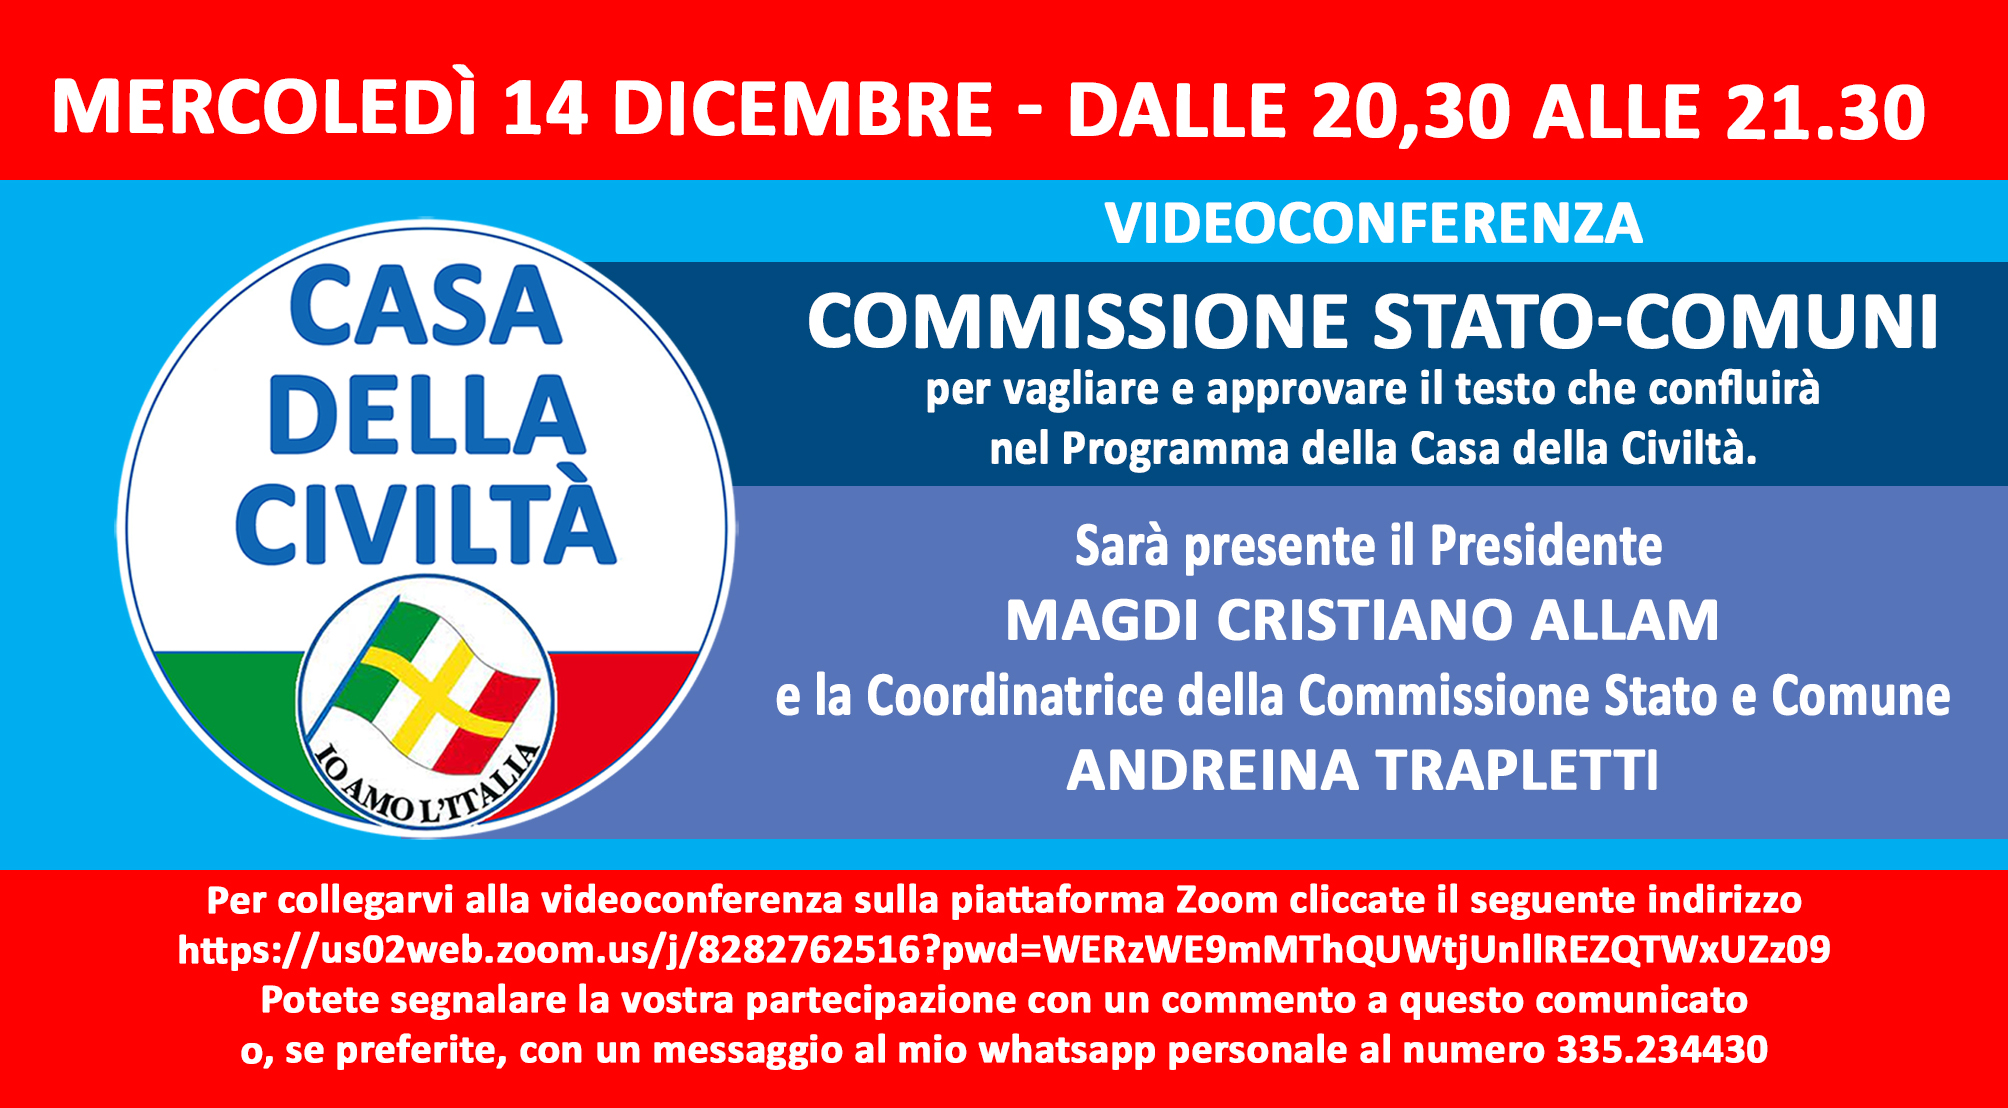 Stasera ore 20,30 videoconferenza della Commissione Stato e Comuni. Gli iscritti alla Casa della Civiltà possono partecipare